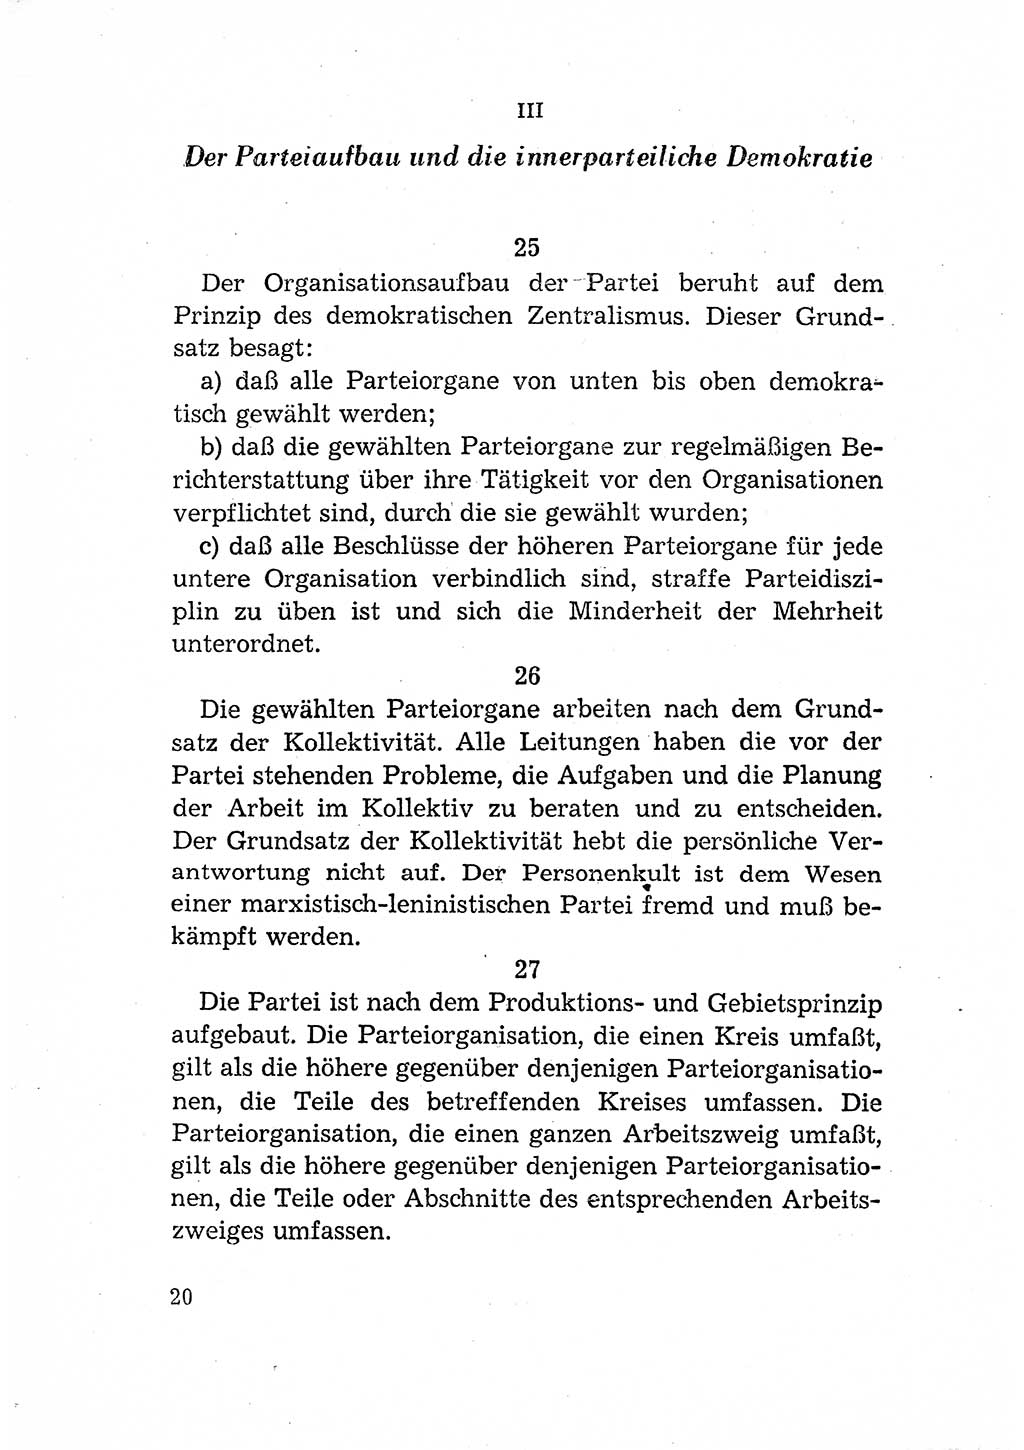 Statut der Sozialistischen Einheitspartei Deutschlands (SED) [Deutsche Demokratische Republik (DDR)] 1958, Seite 20 (St. SED DDR 1958, S. 20)